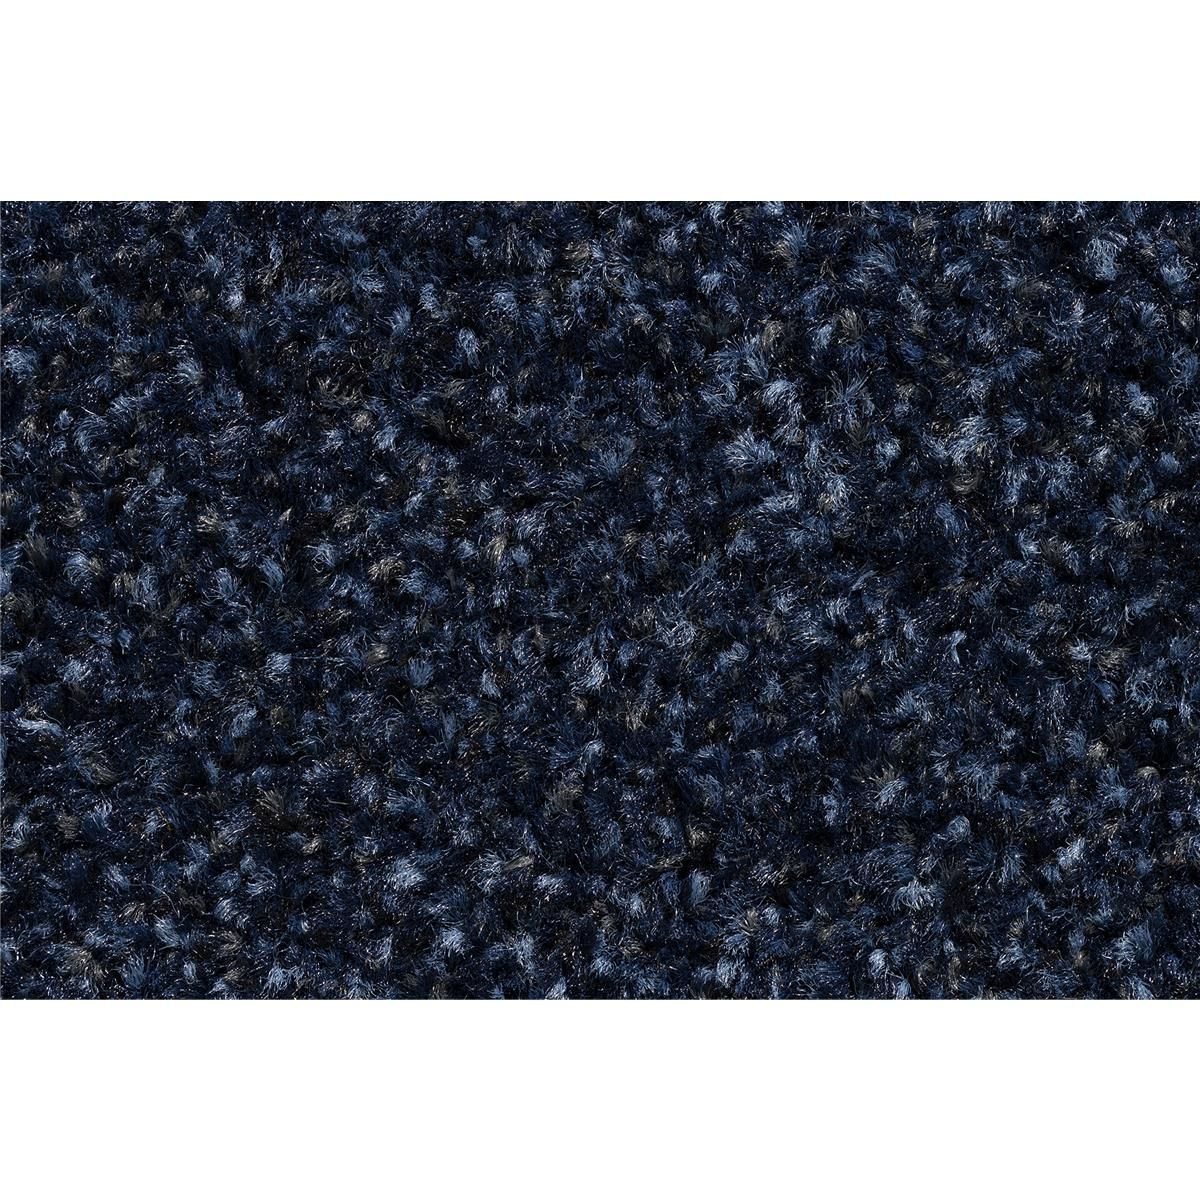 Sauberlauf Innen Portal 011 cobalt blue - Rollenbreite 130 cm